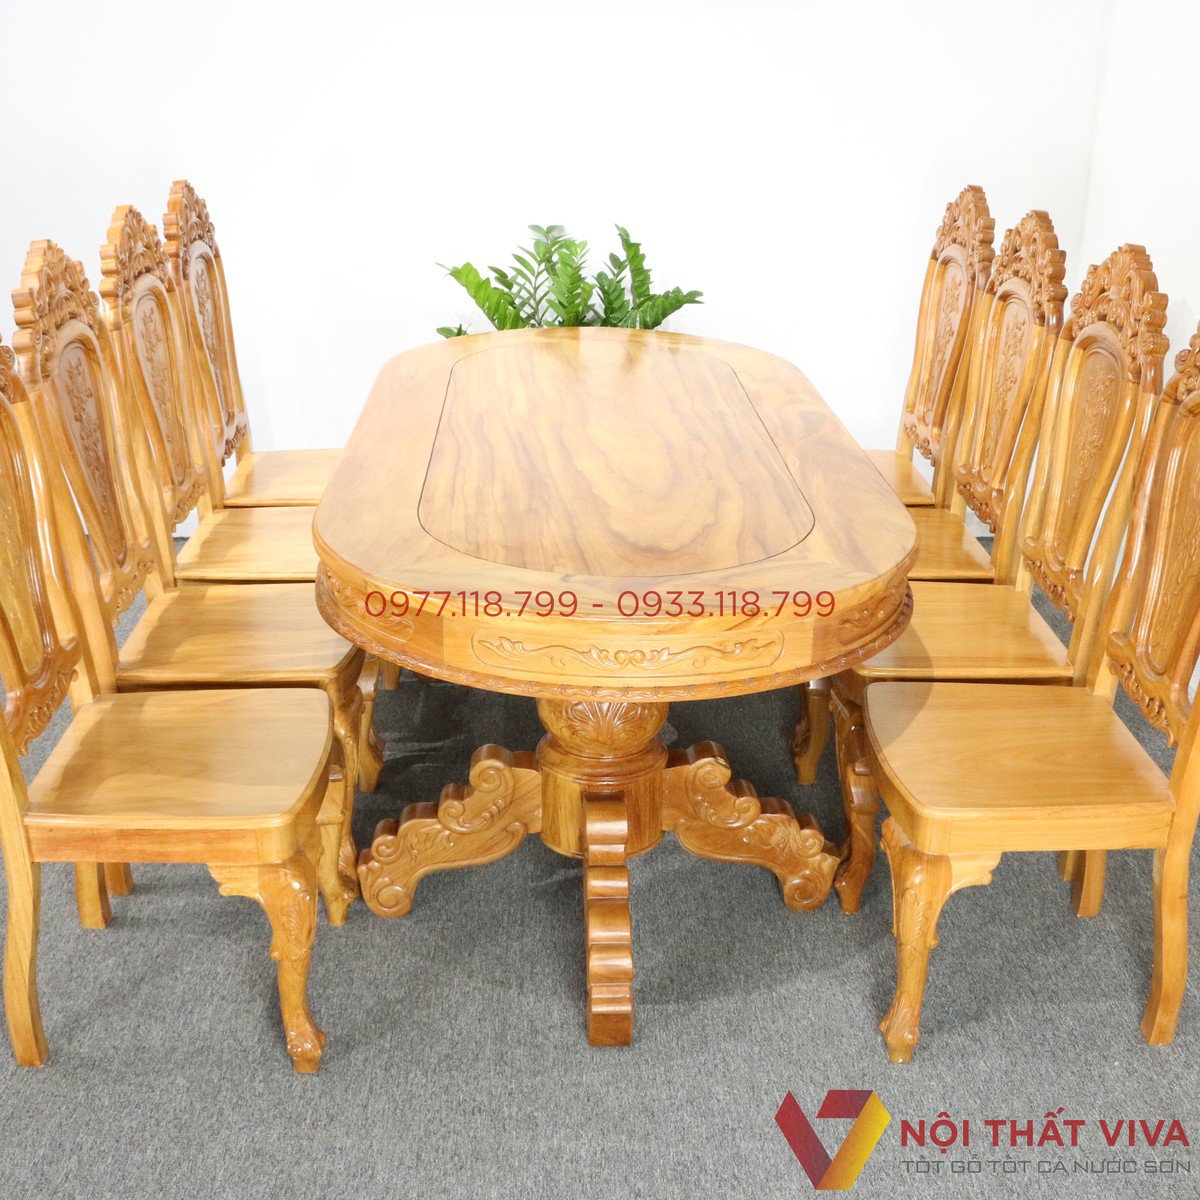 Bộ bàn ăn 8 ghế đẹp, giá rẻ, chất lượng